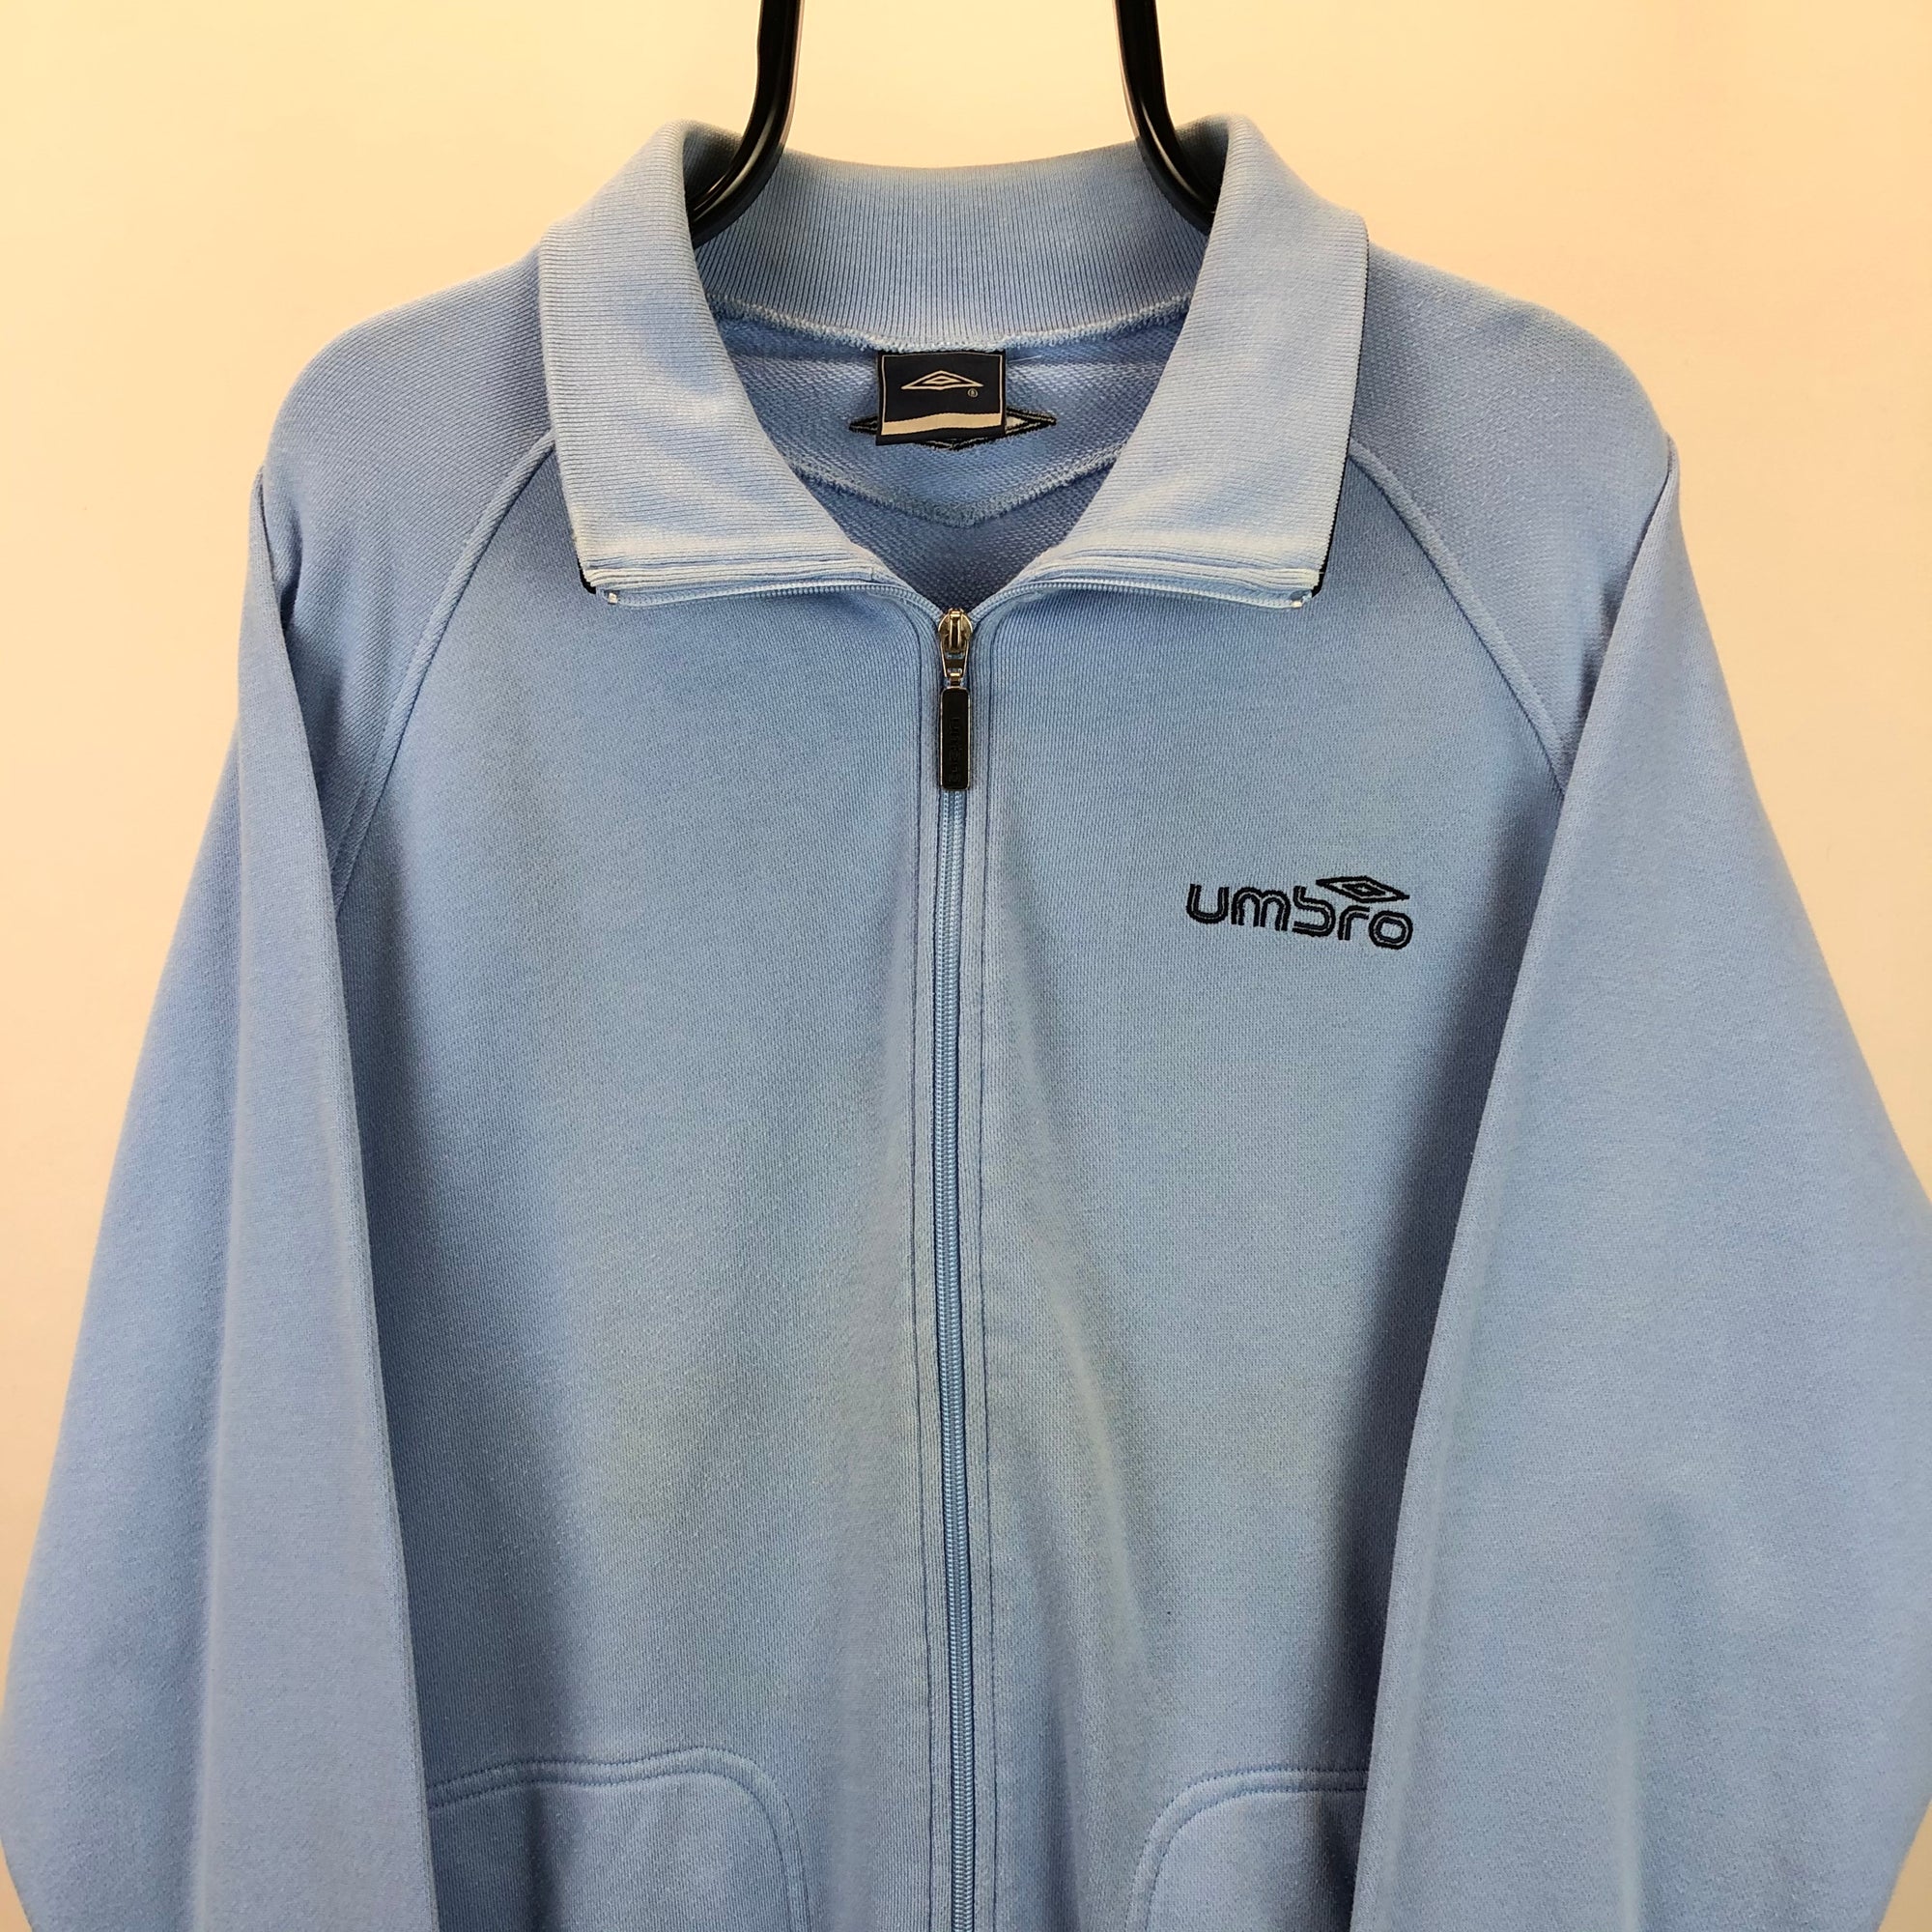 Vintage Umbro Zip Up Sweatshirt Jacket in Baby Blue - Men's Large/Women's XL